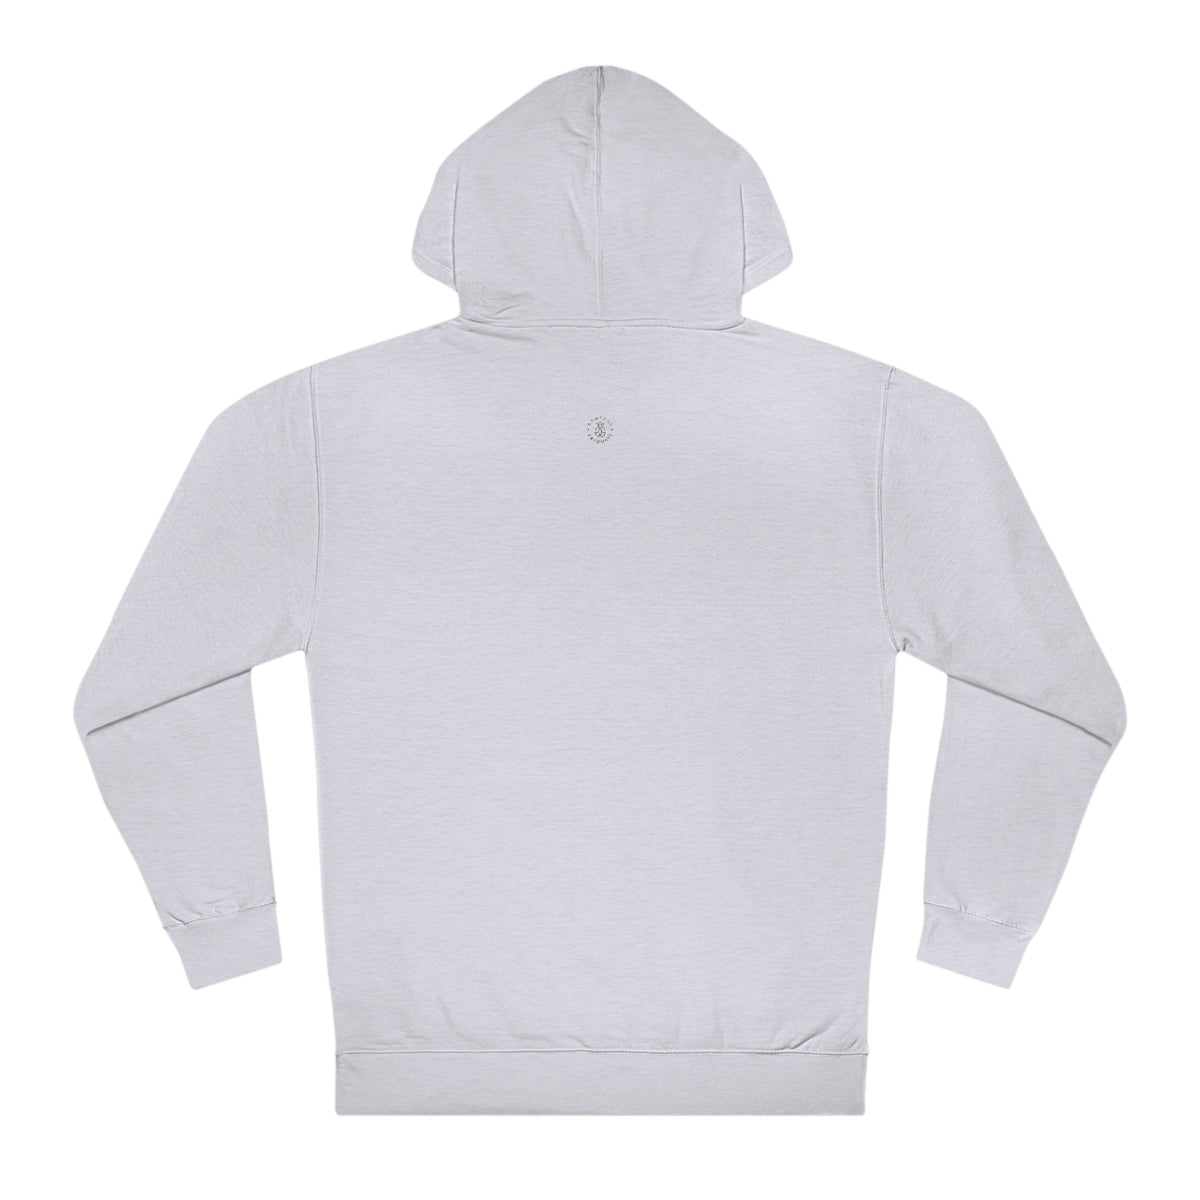 Illinois Hooded Sweatshirt - GG - ITC